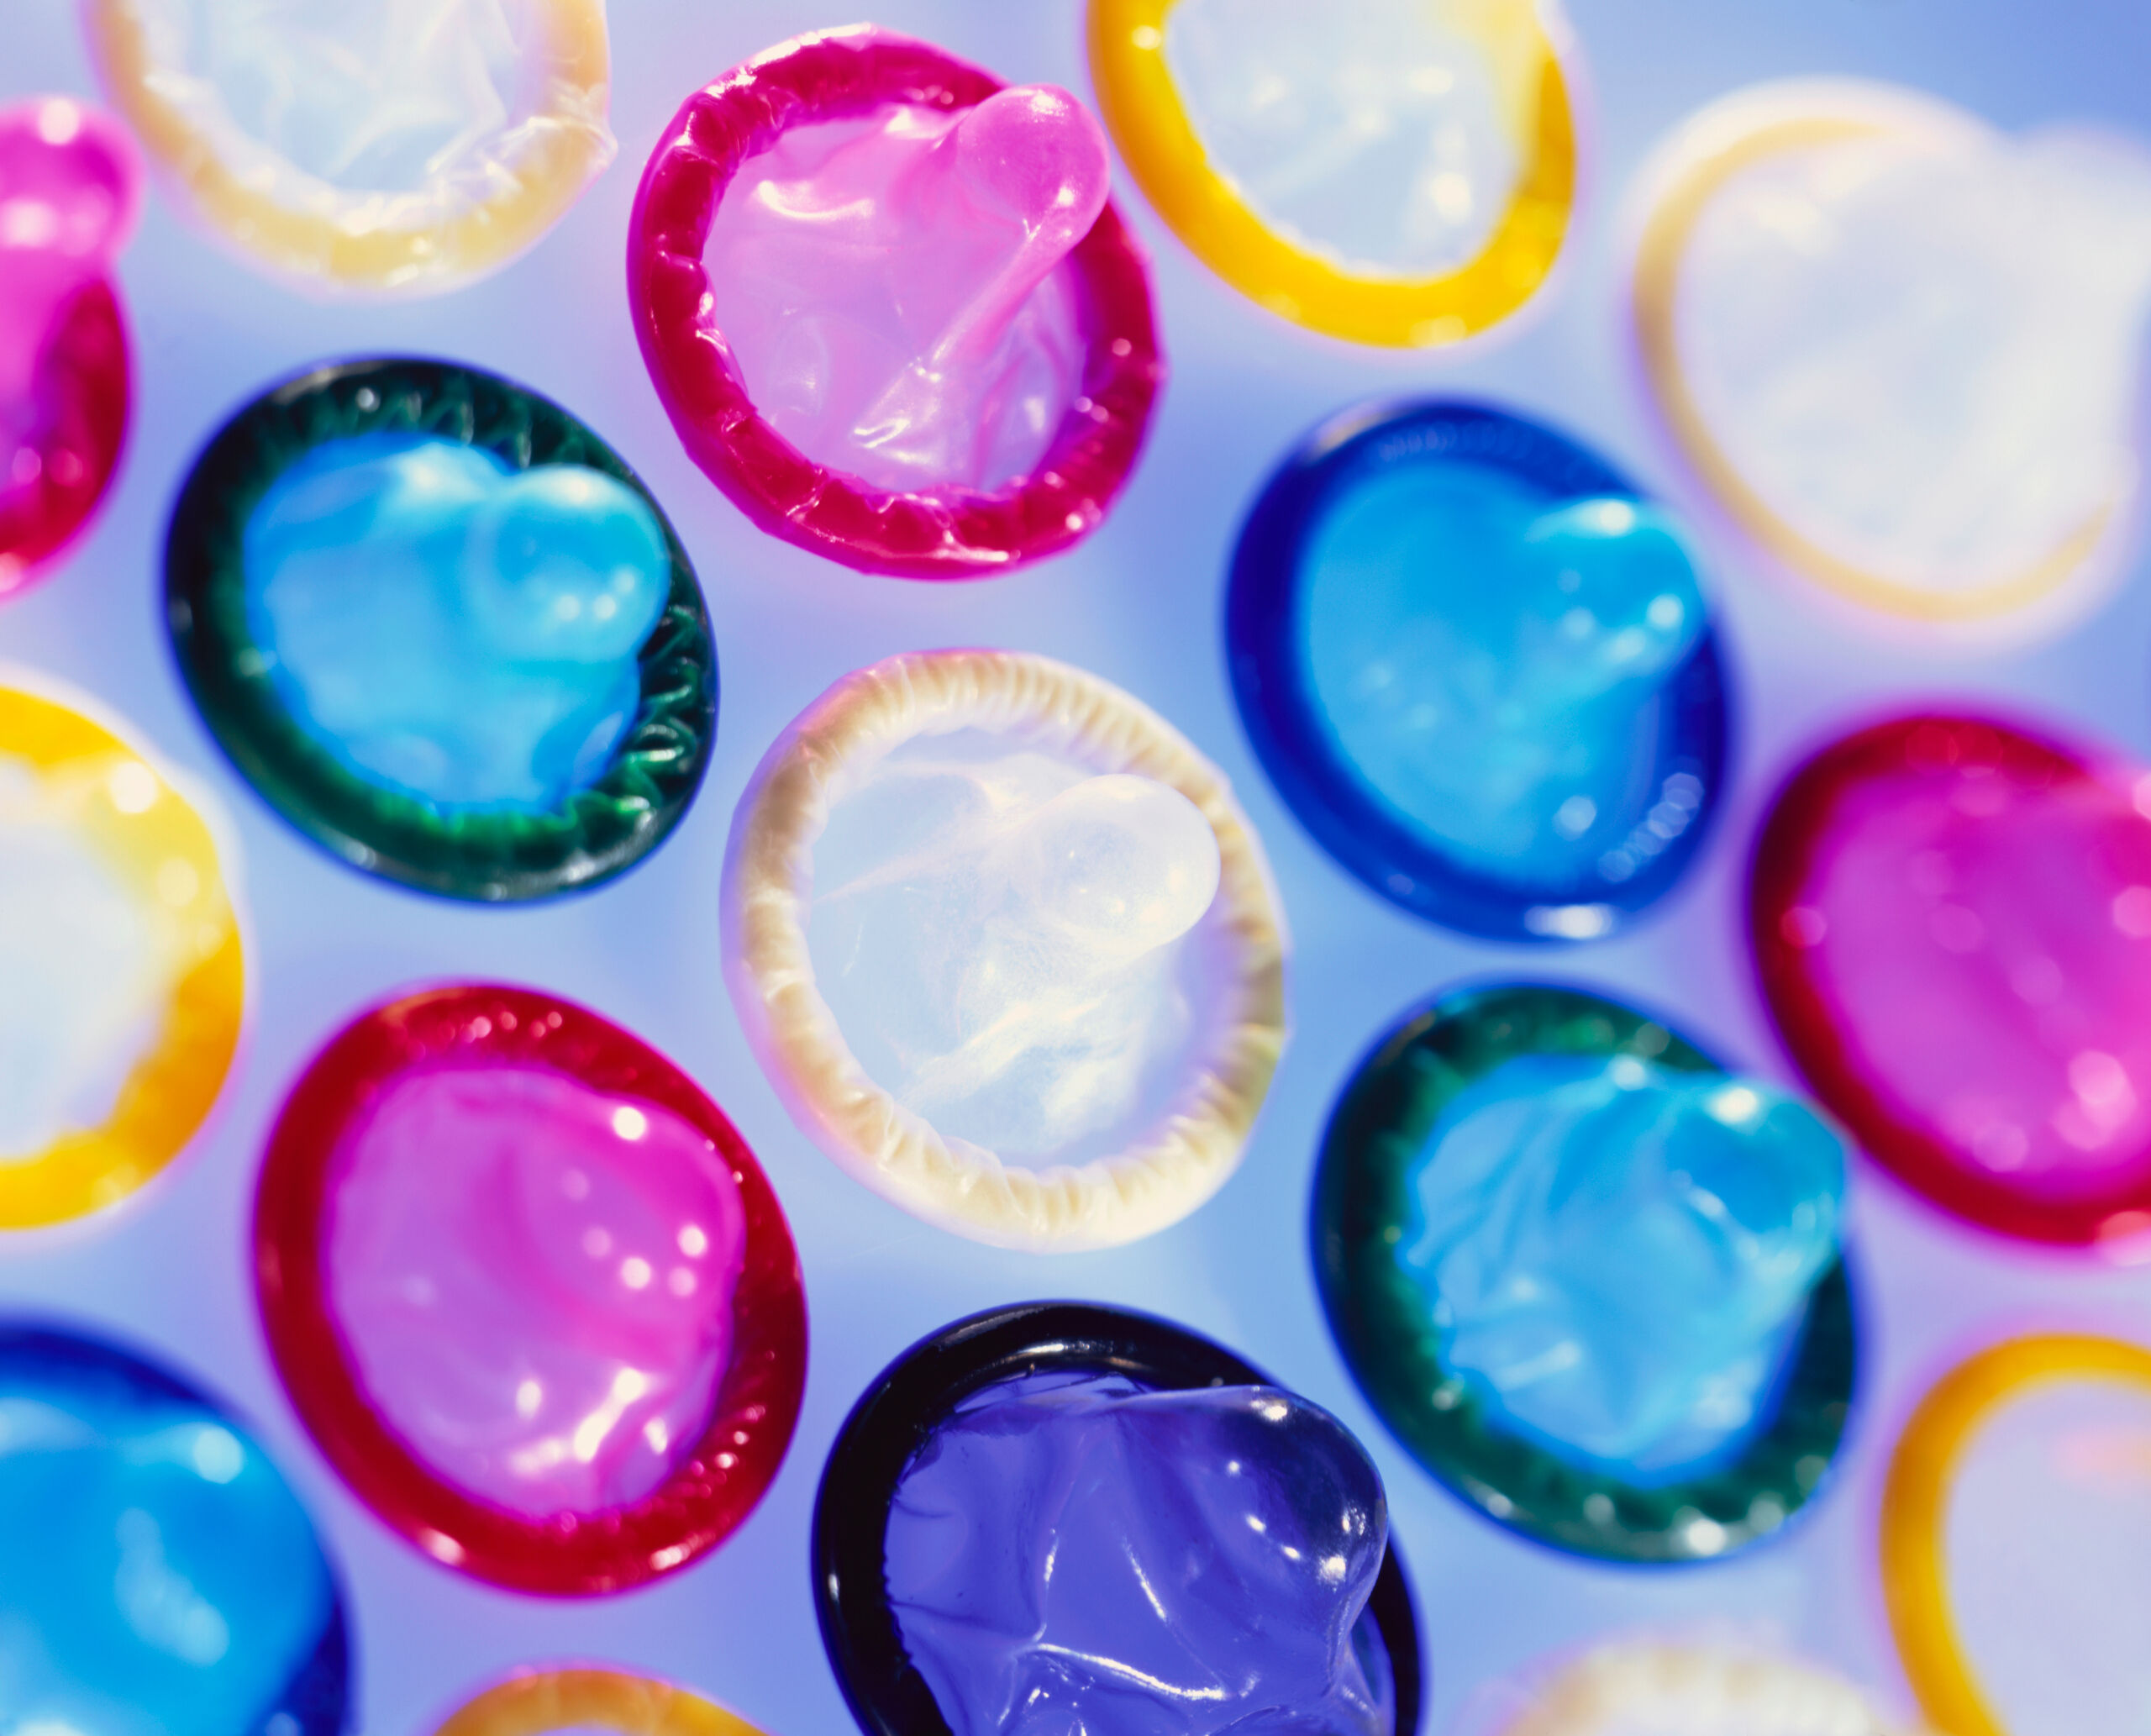 Un nuevo estudio sobre el uso del preservativo entre hombres homosexuales revela algunas conclusiones sorprendentes y alarmantes